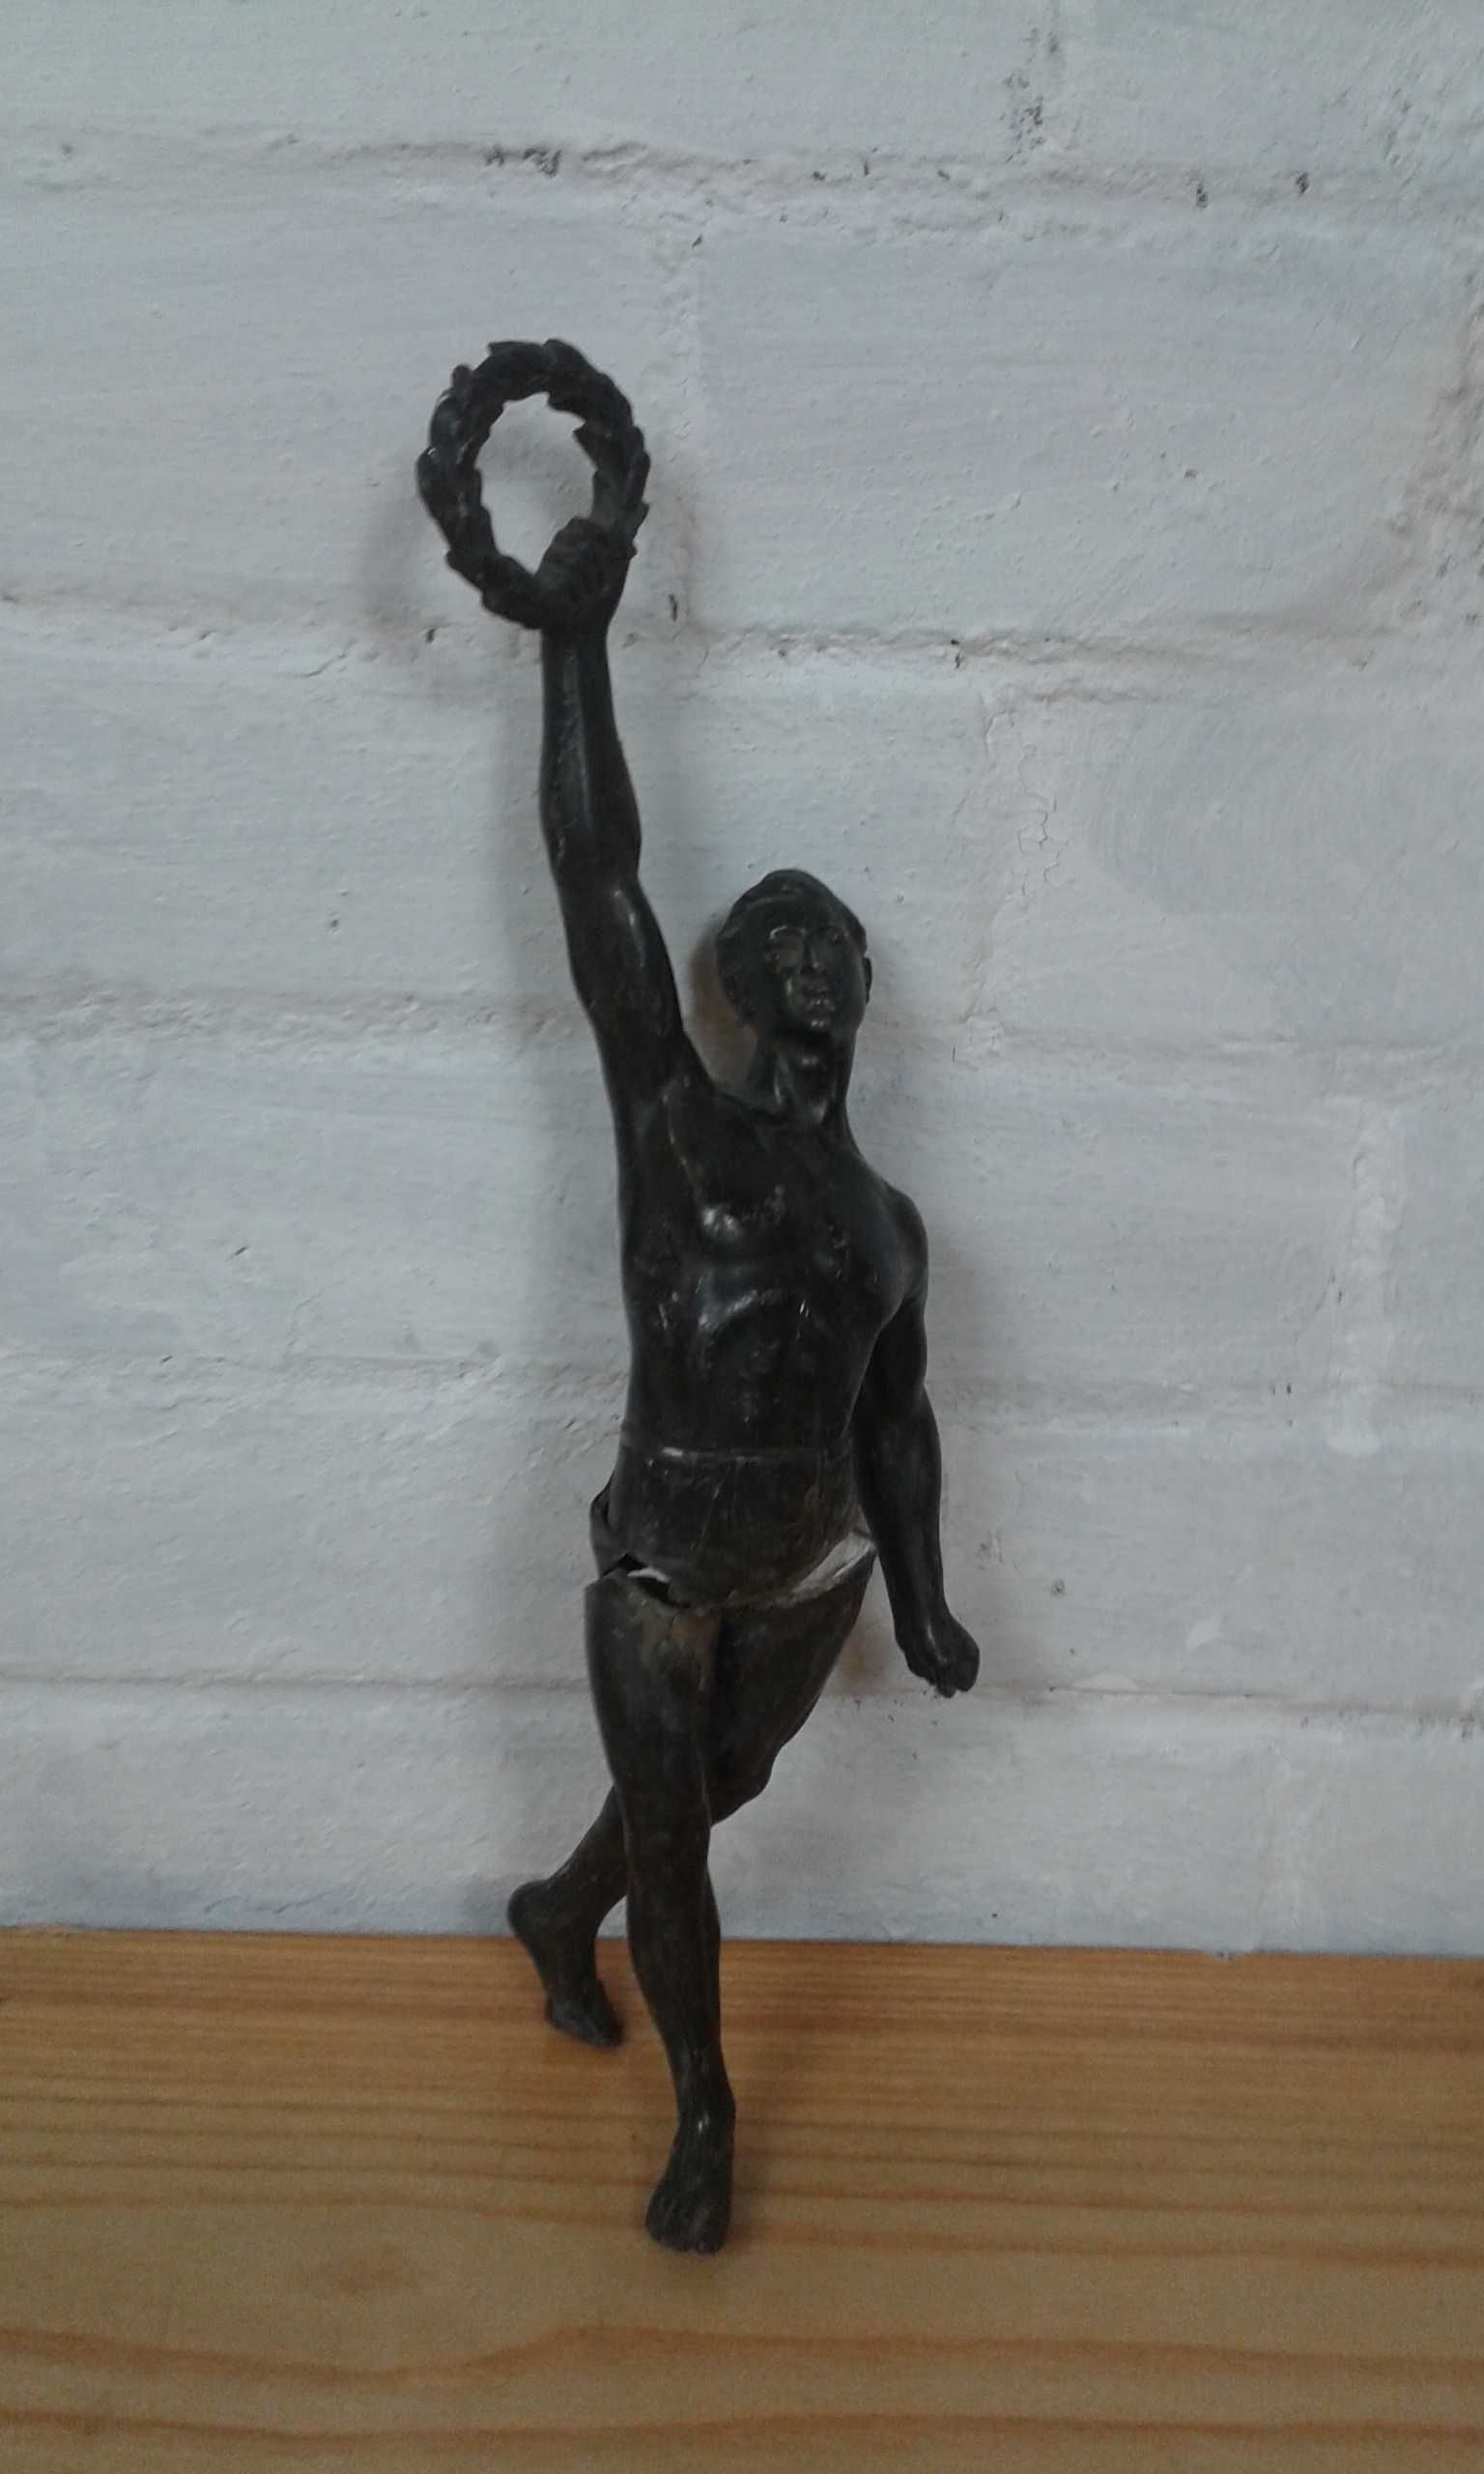 Stara przedwojenna figura figurka olimpijczyk lata 30/40